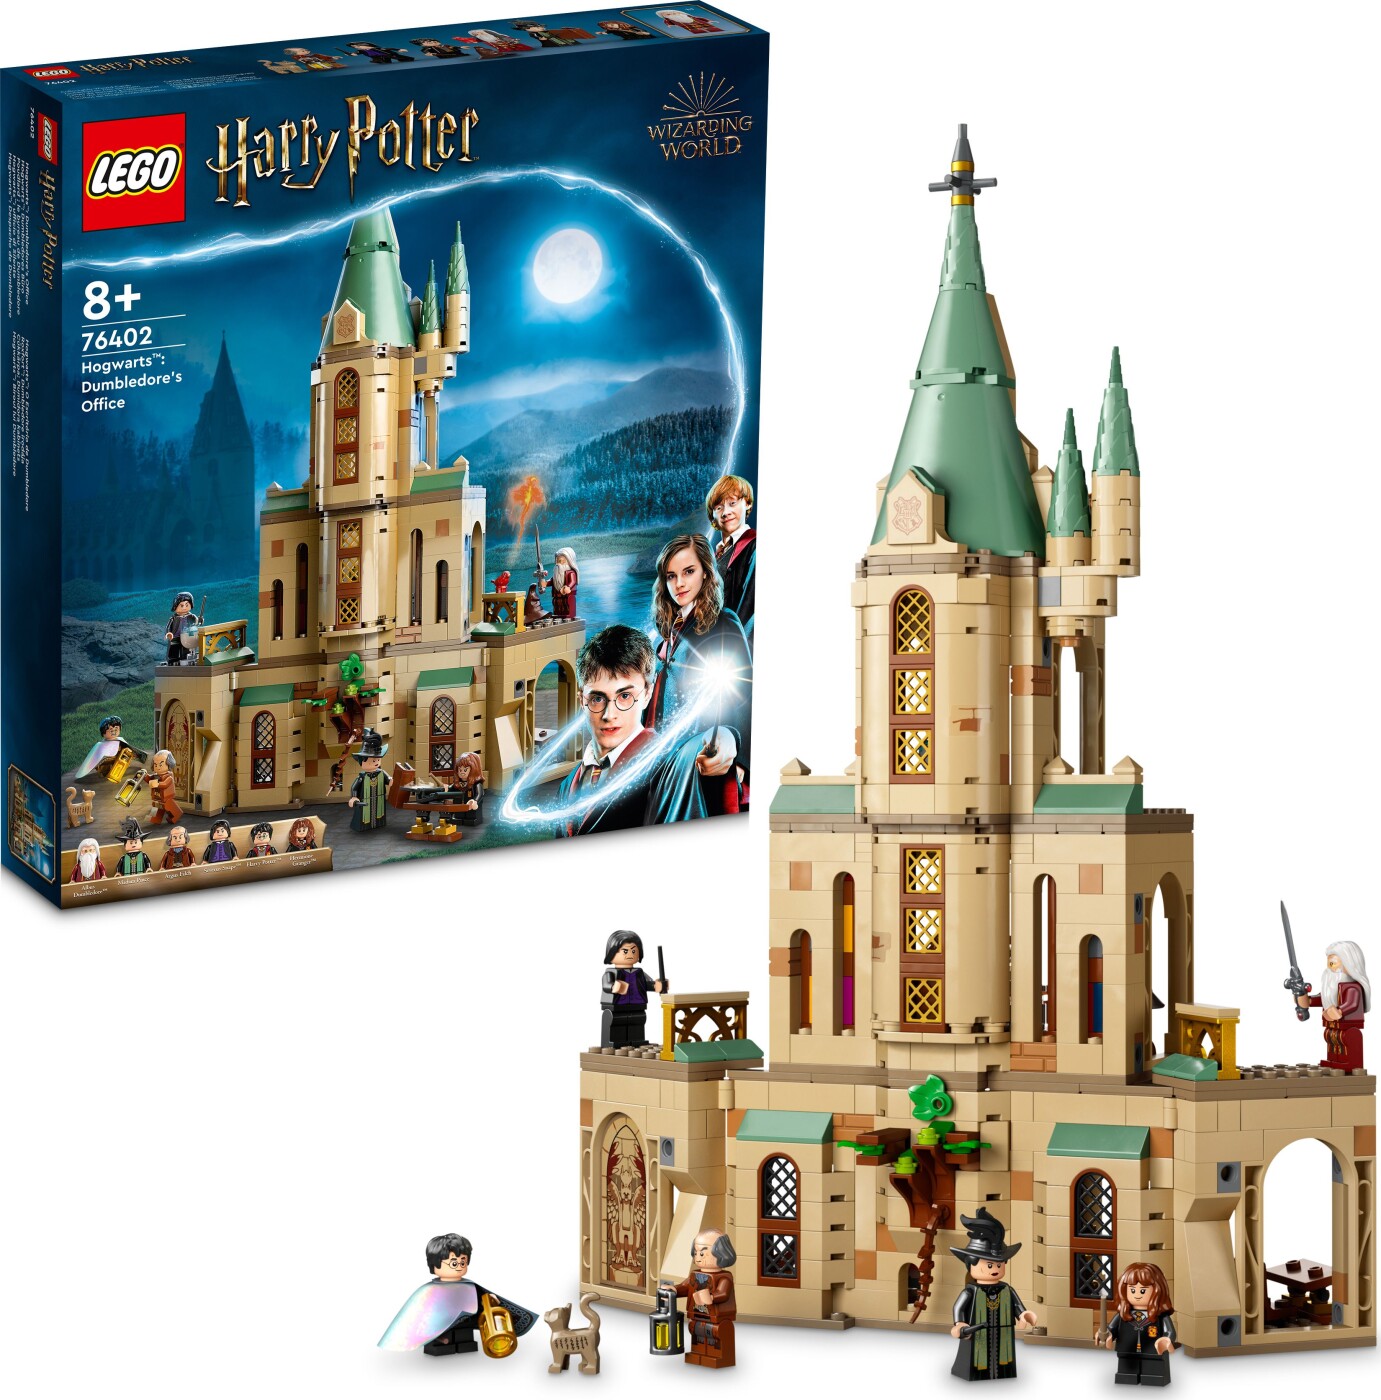 Billede af Lego Harry Potter - Hogwarts - Dumbledores Office - 76402 hos Gucca.dk